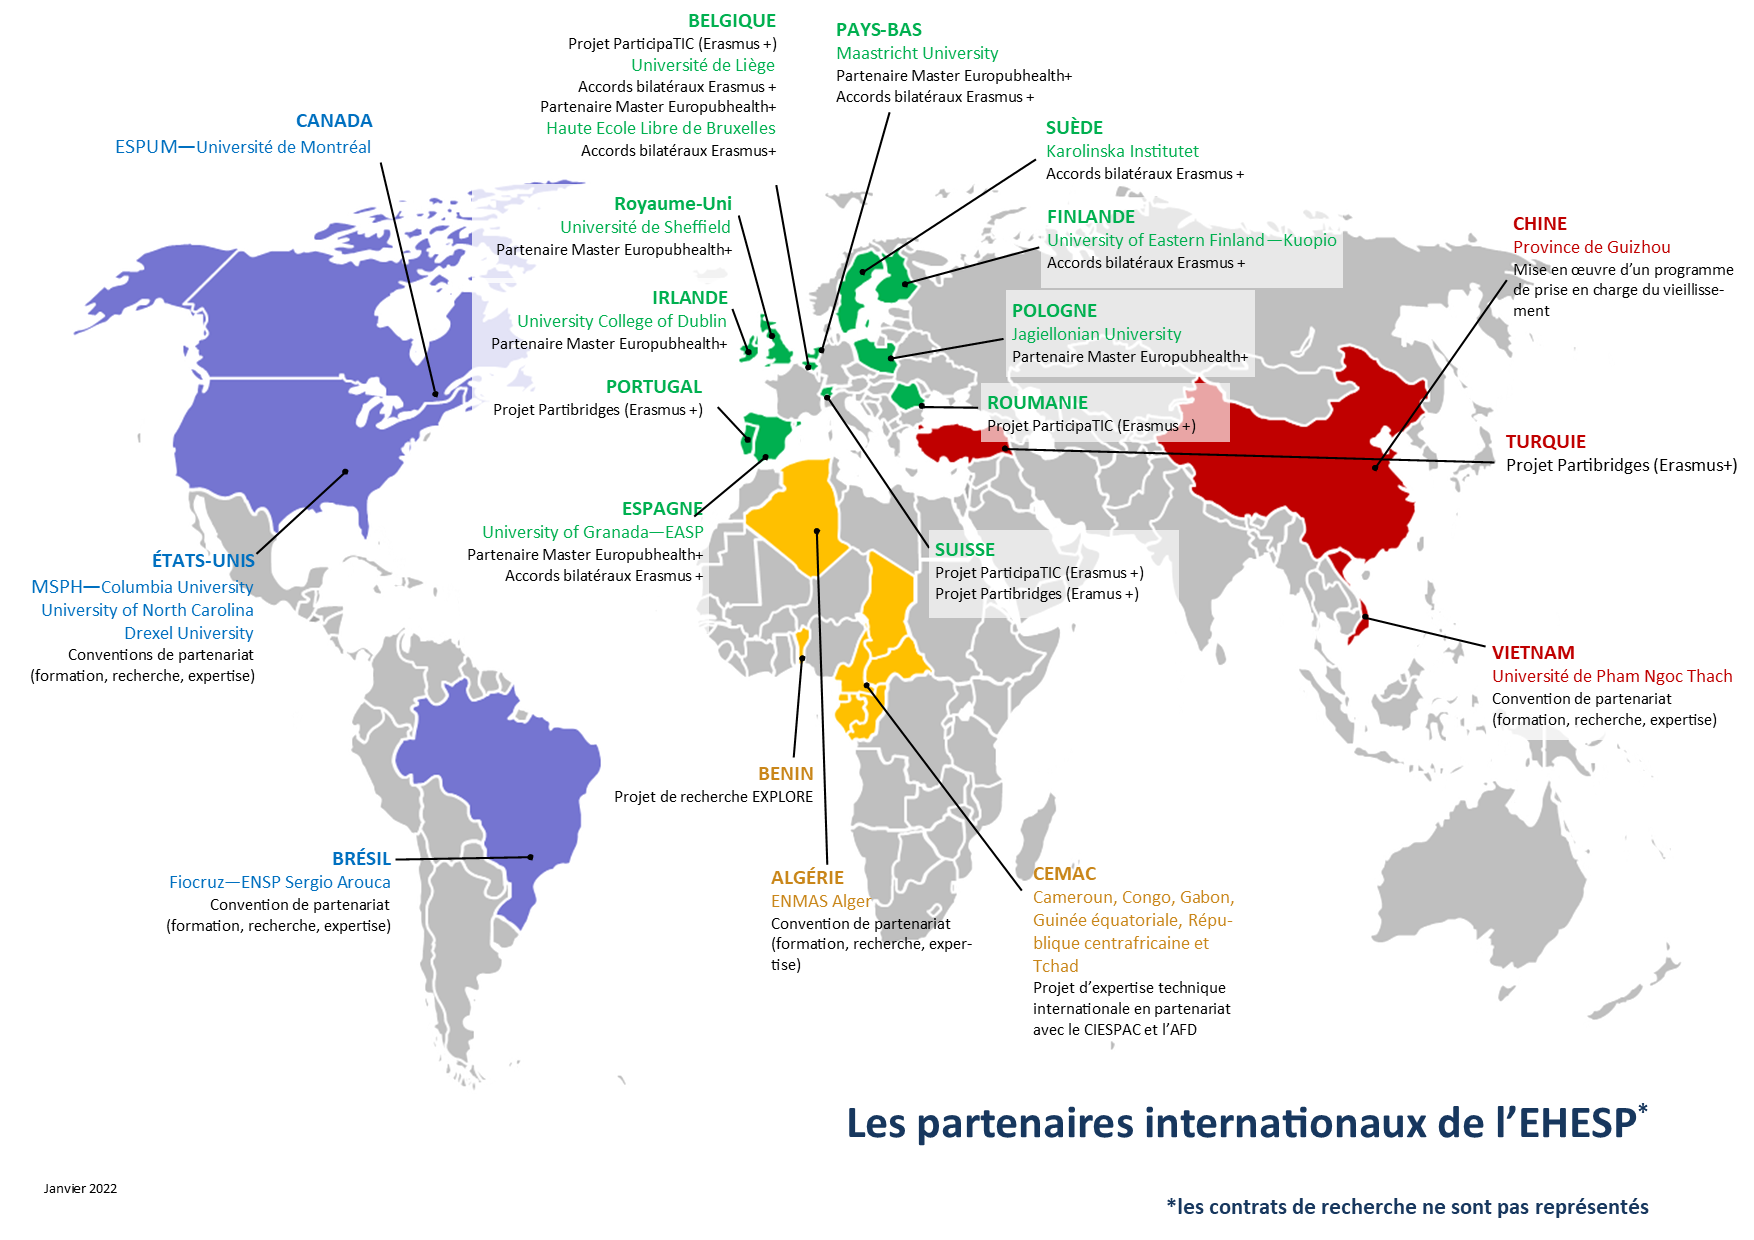 L'image est une carte du monde qui montre les différents partenaires de l'EHESP en janvier 2022